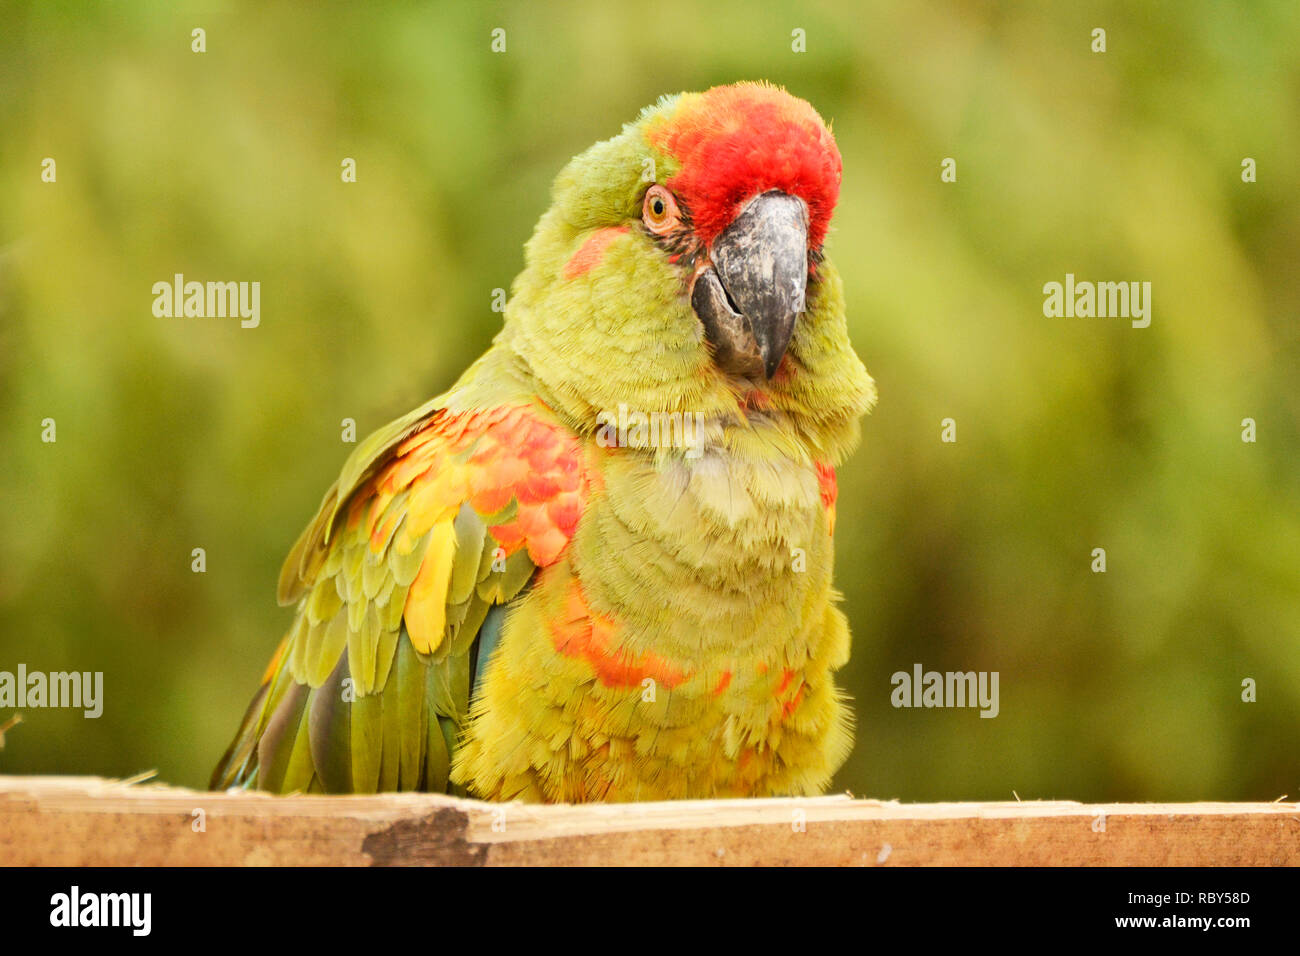 Red incoronato (verde cheeked) Amazon Parrot a sud dei laghi Zoo Safari, Cumbria, Regno Unito Foto Stock